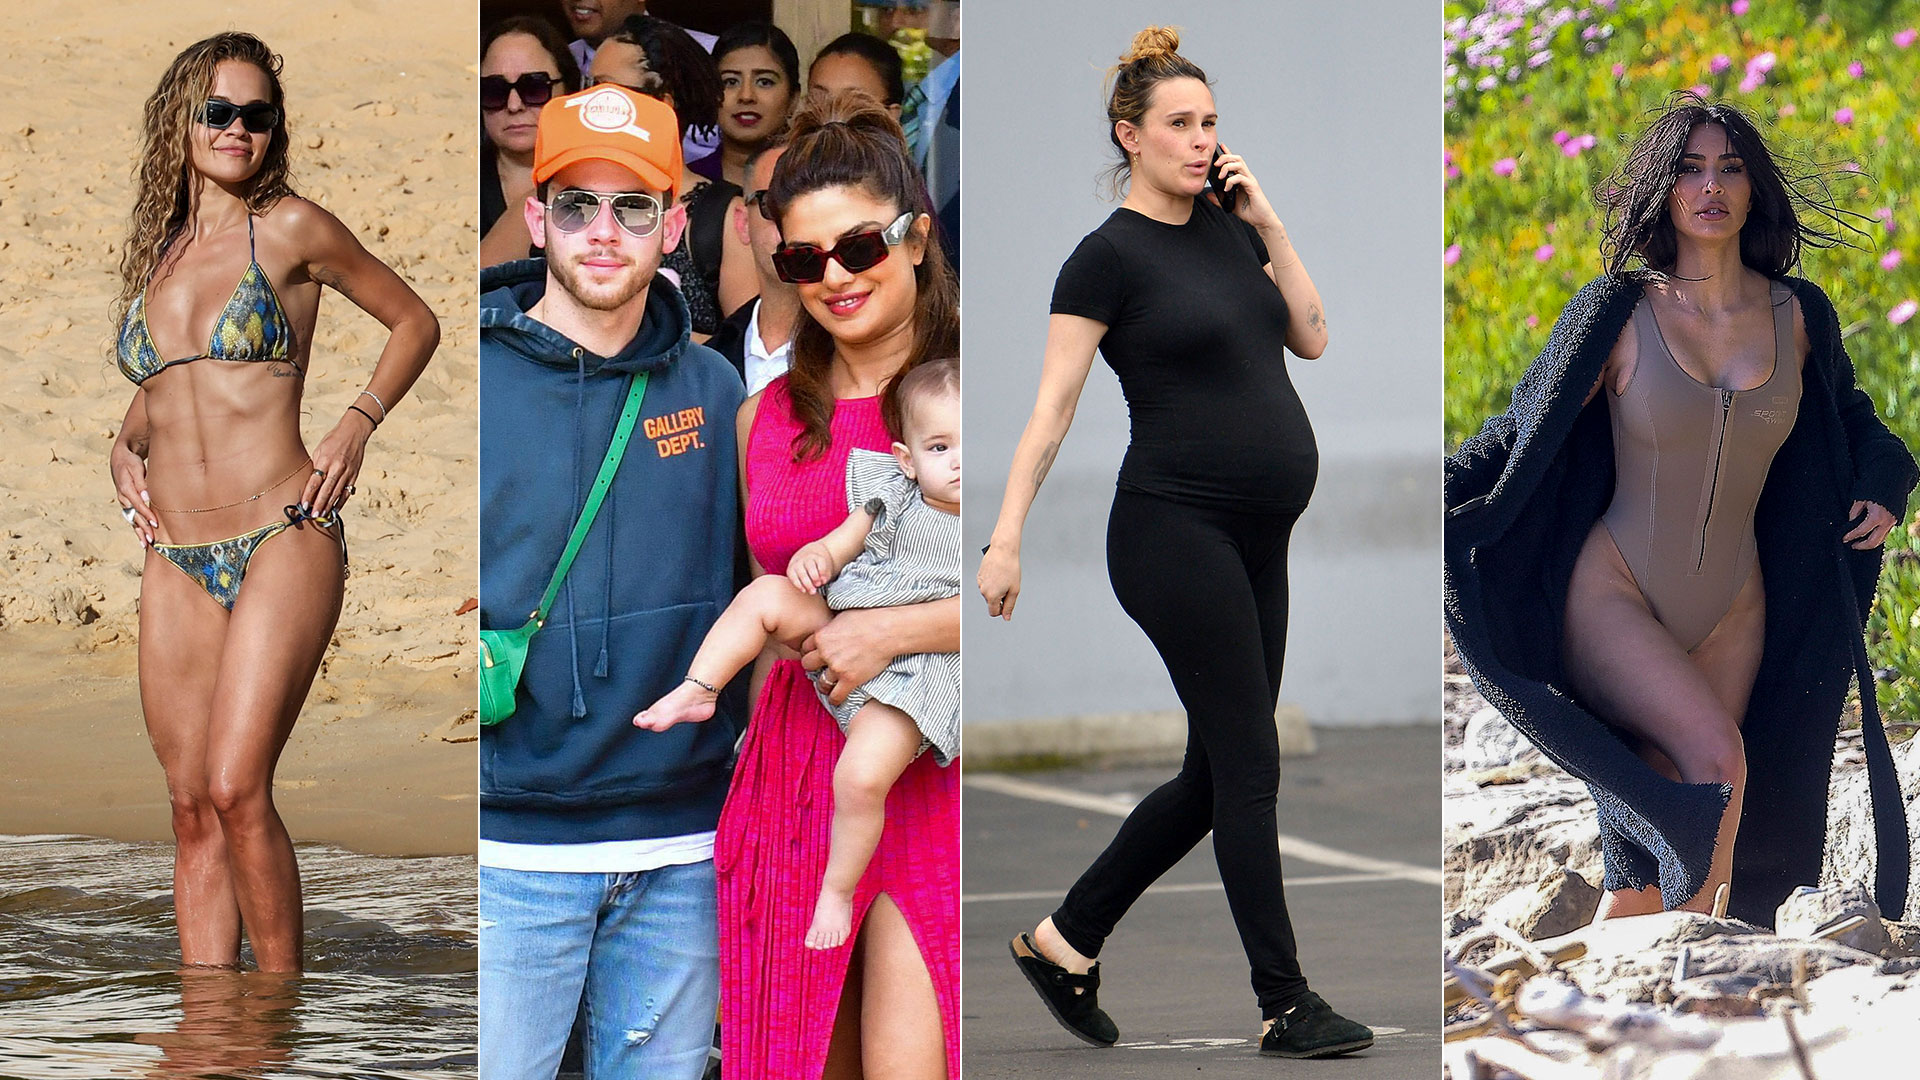 El día de playa de Rita Ora en Sídney, el viaje familiar de Priyanka Chopra y Nick Jonas a India: celebrities en un click